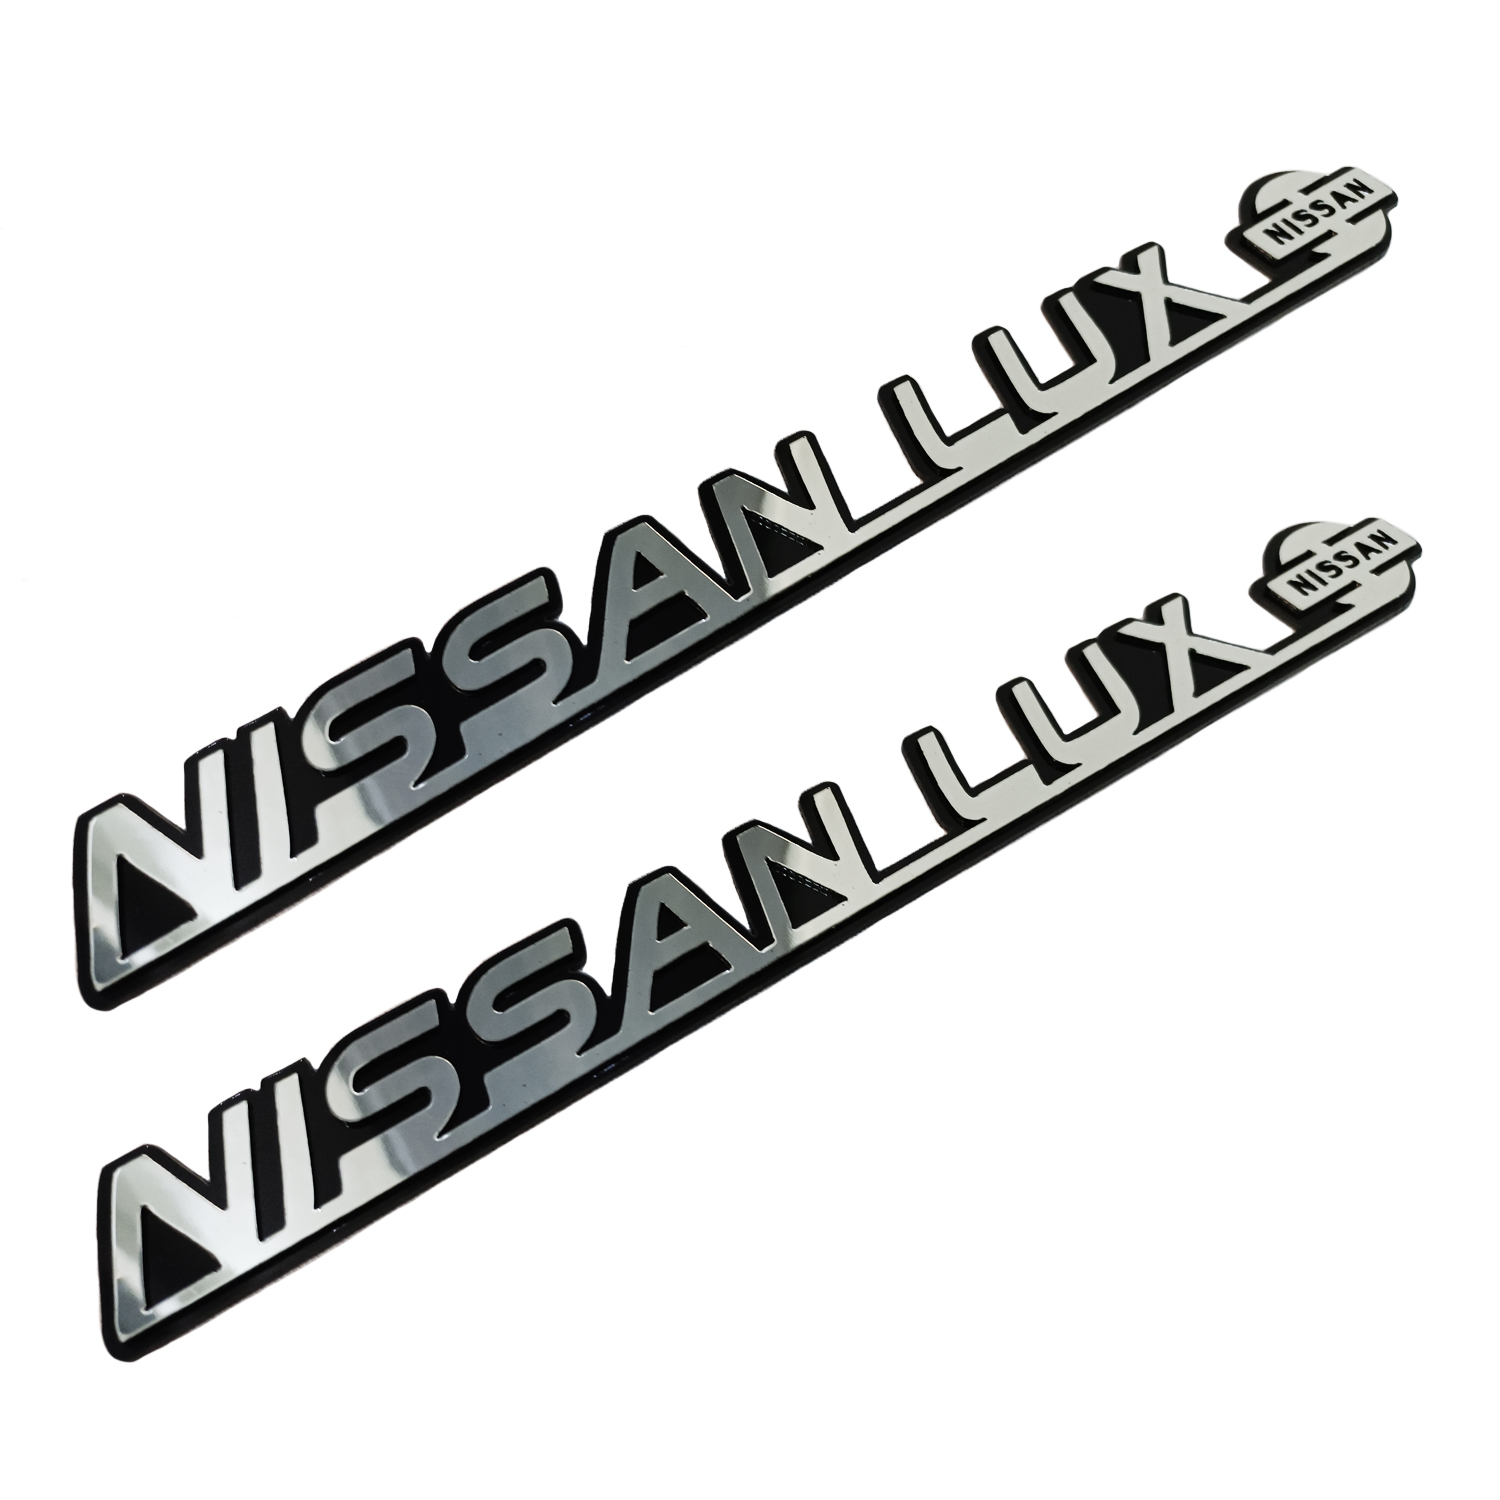 آرم گلگیر خودرو مدل لوکس کد NISLOX01 مناسب برای نیسان زامیاد بسته دو عددی